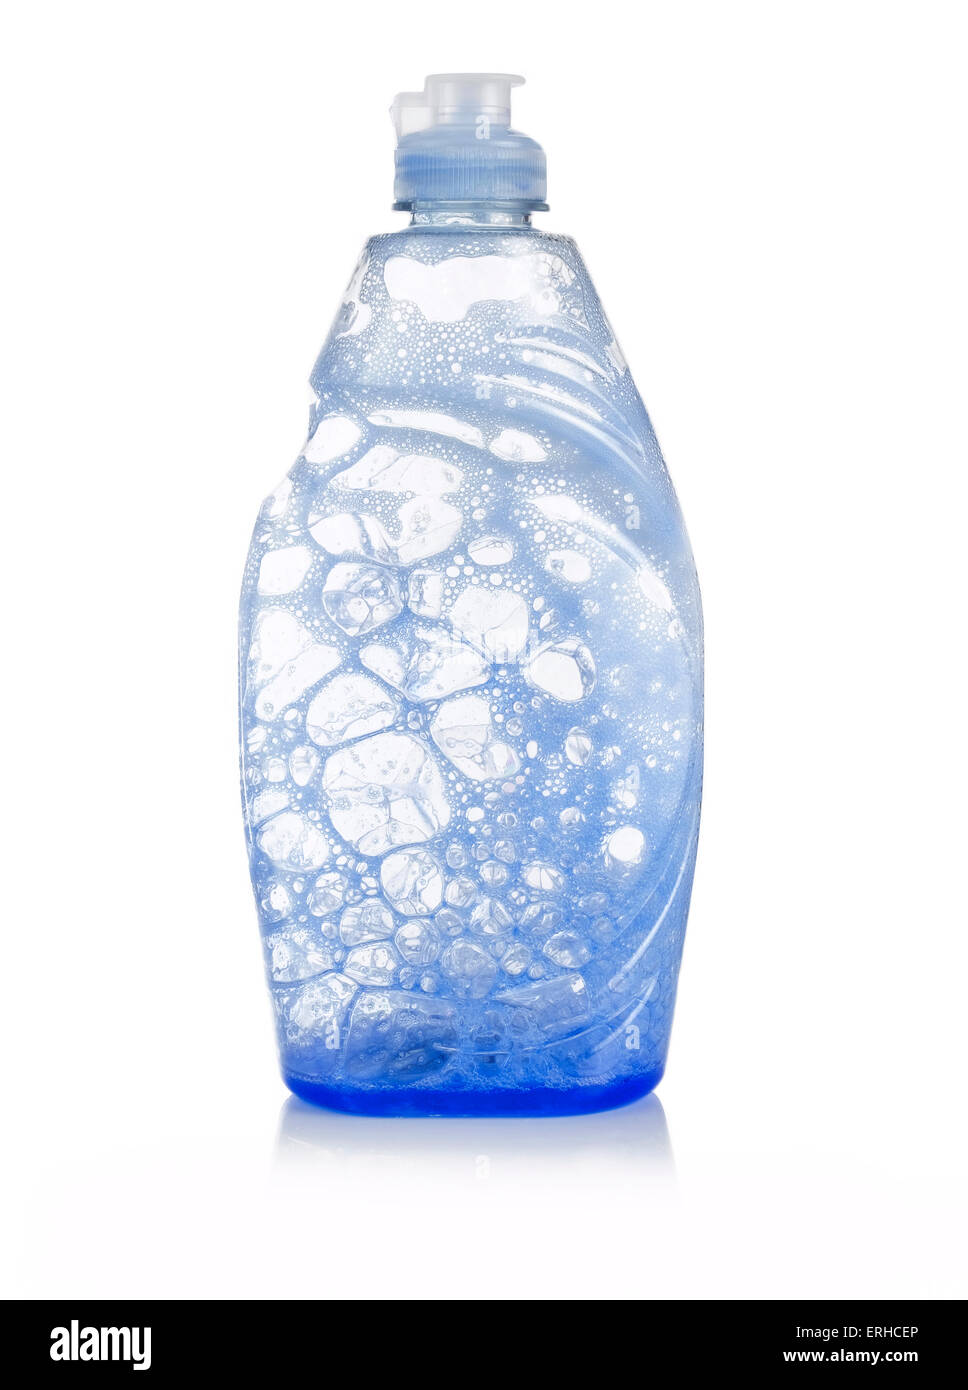 Le liquide vaisselle bleue vide Banque D'Images